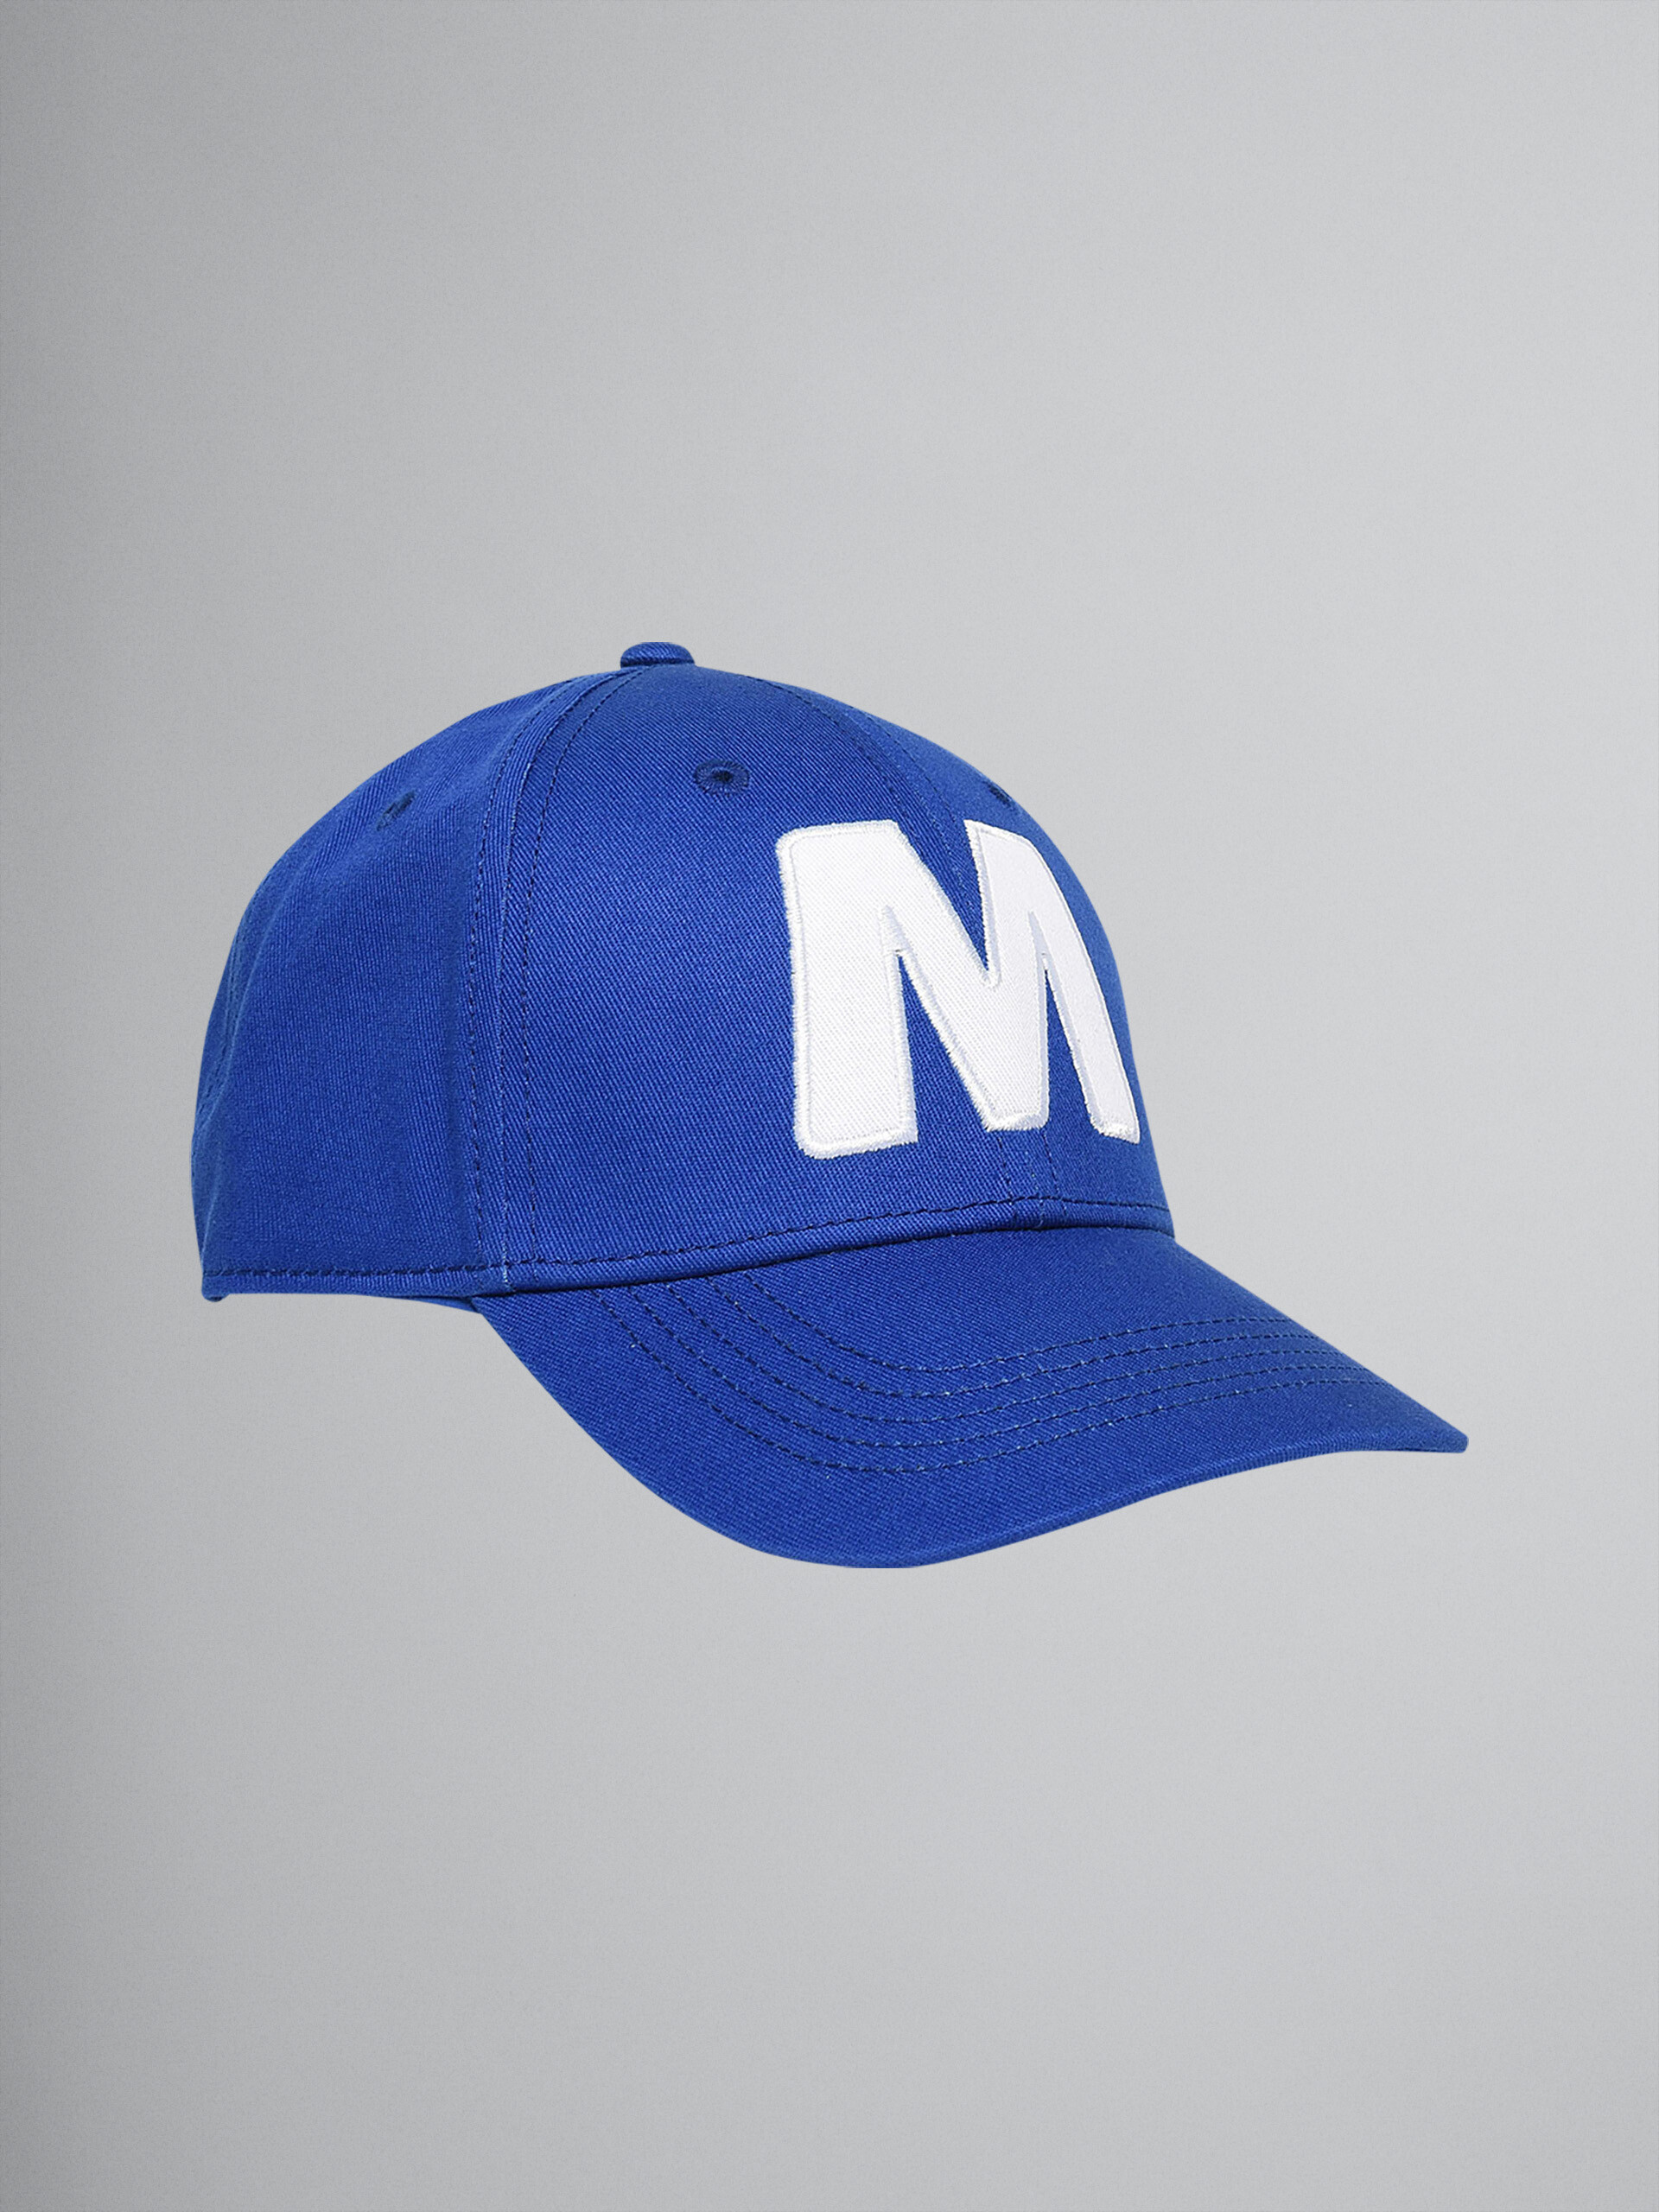 Cappello da baseball "M" in cotone blu - Cappello - Image 1